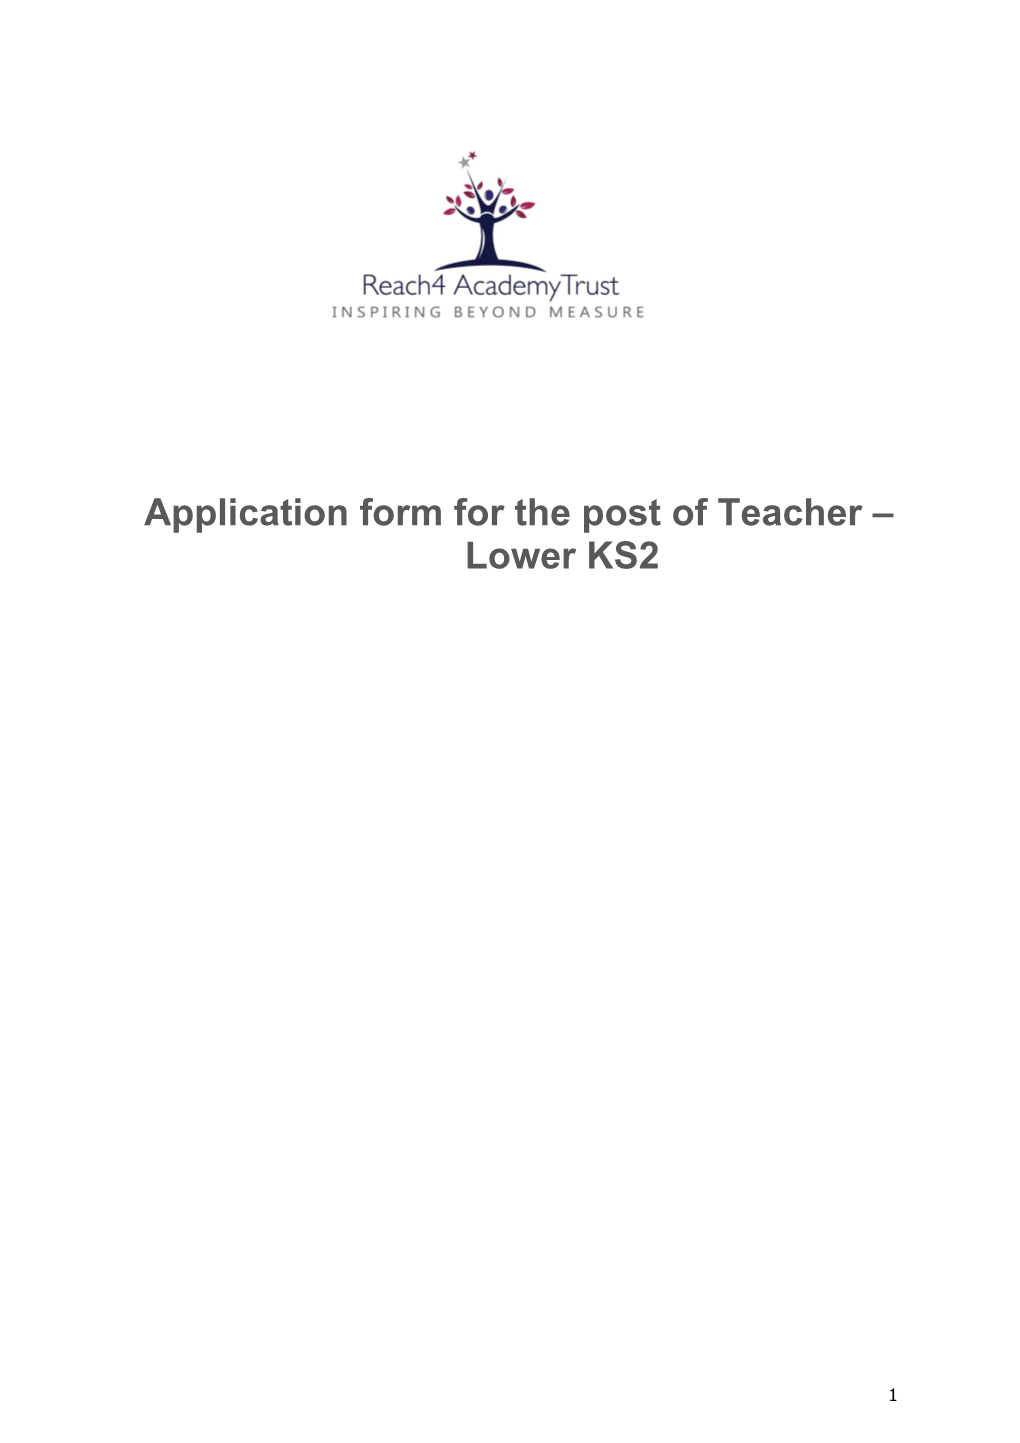 Application Form for the Post Ofteacher Lower KS2